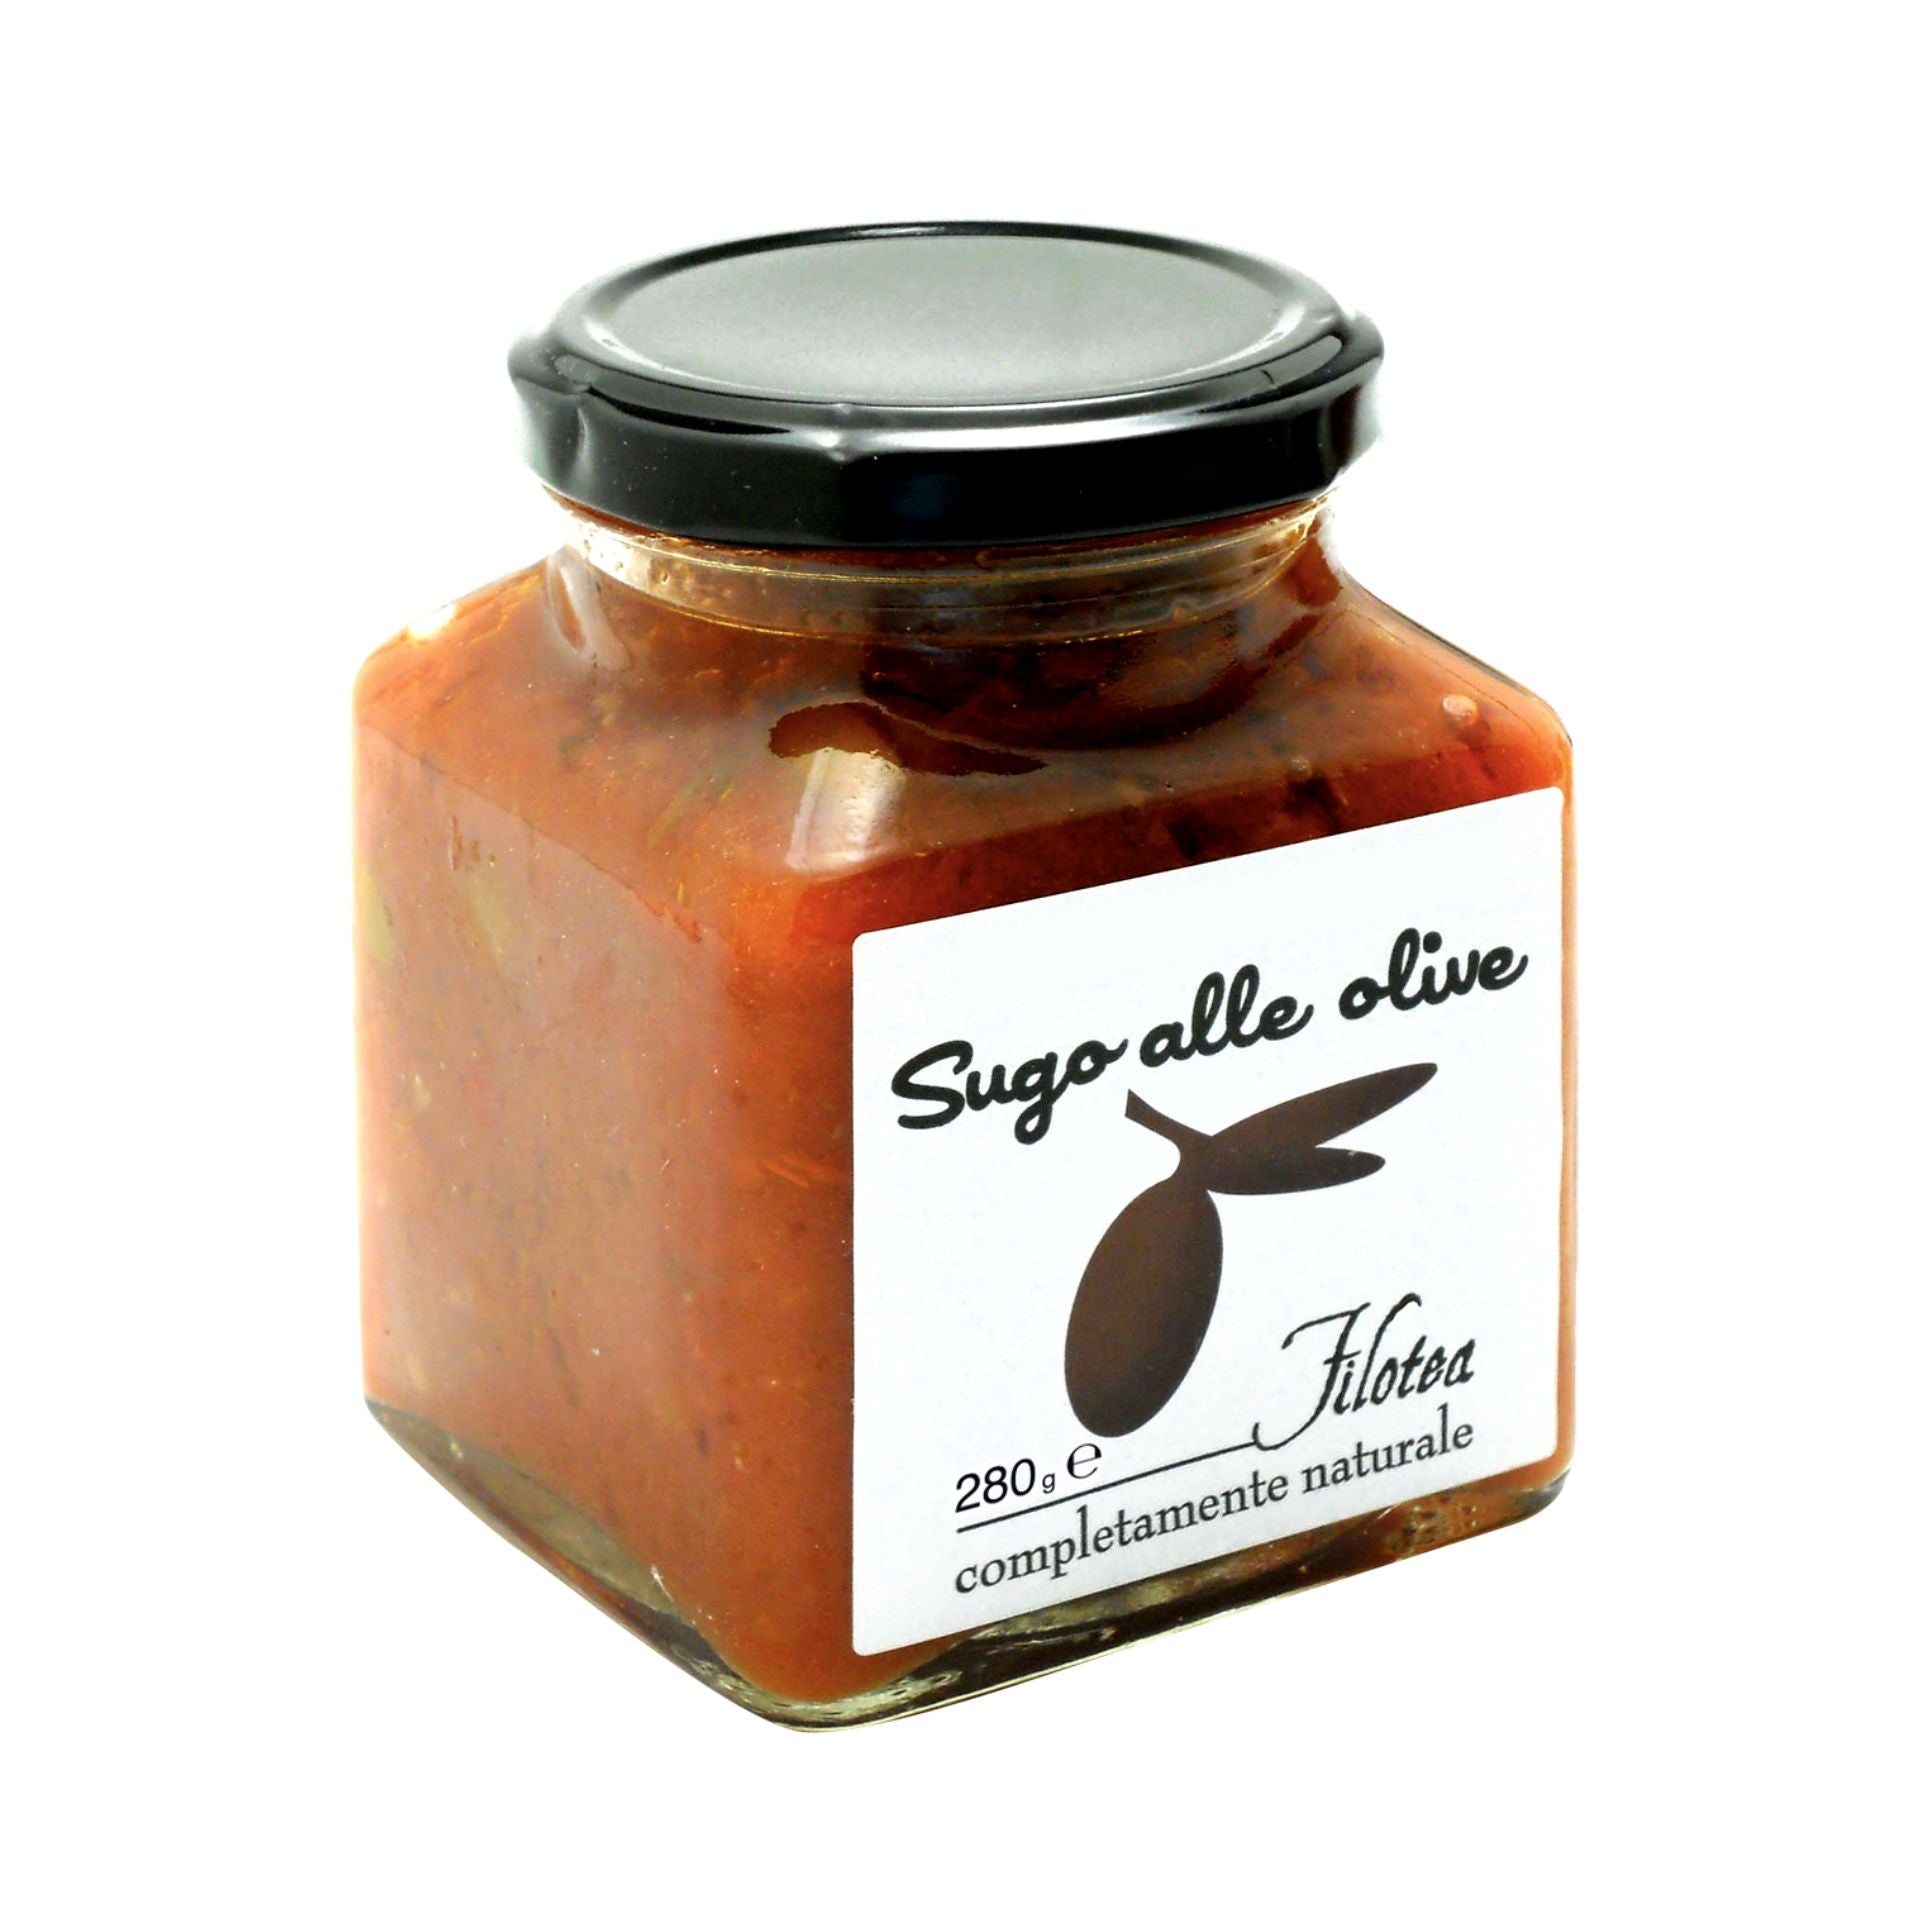 Filotea Tomato Olive & Caper Pasta Sauce 280g Feast Italy